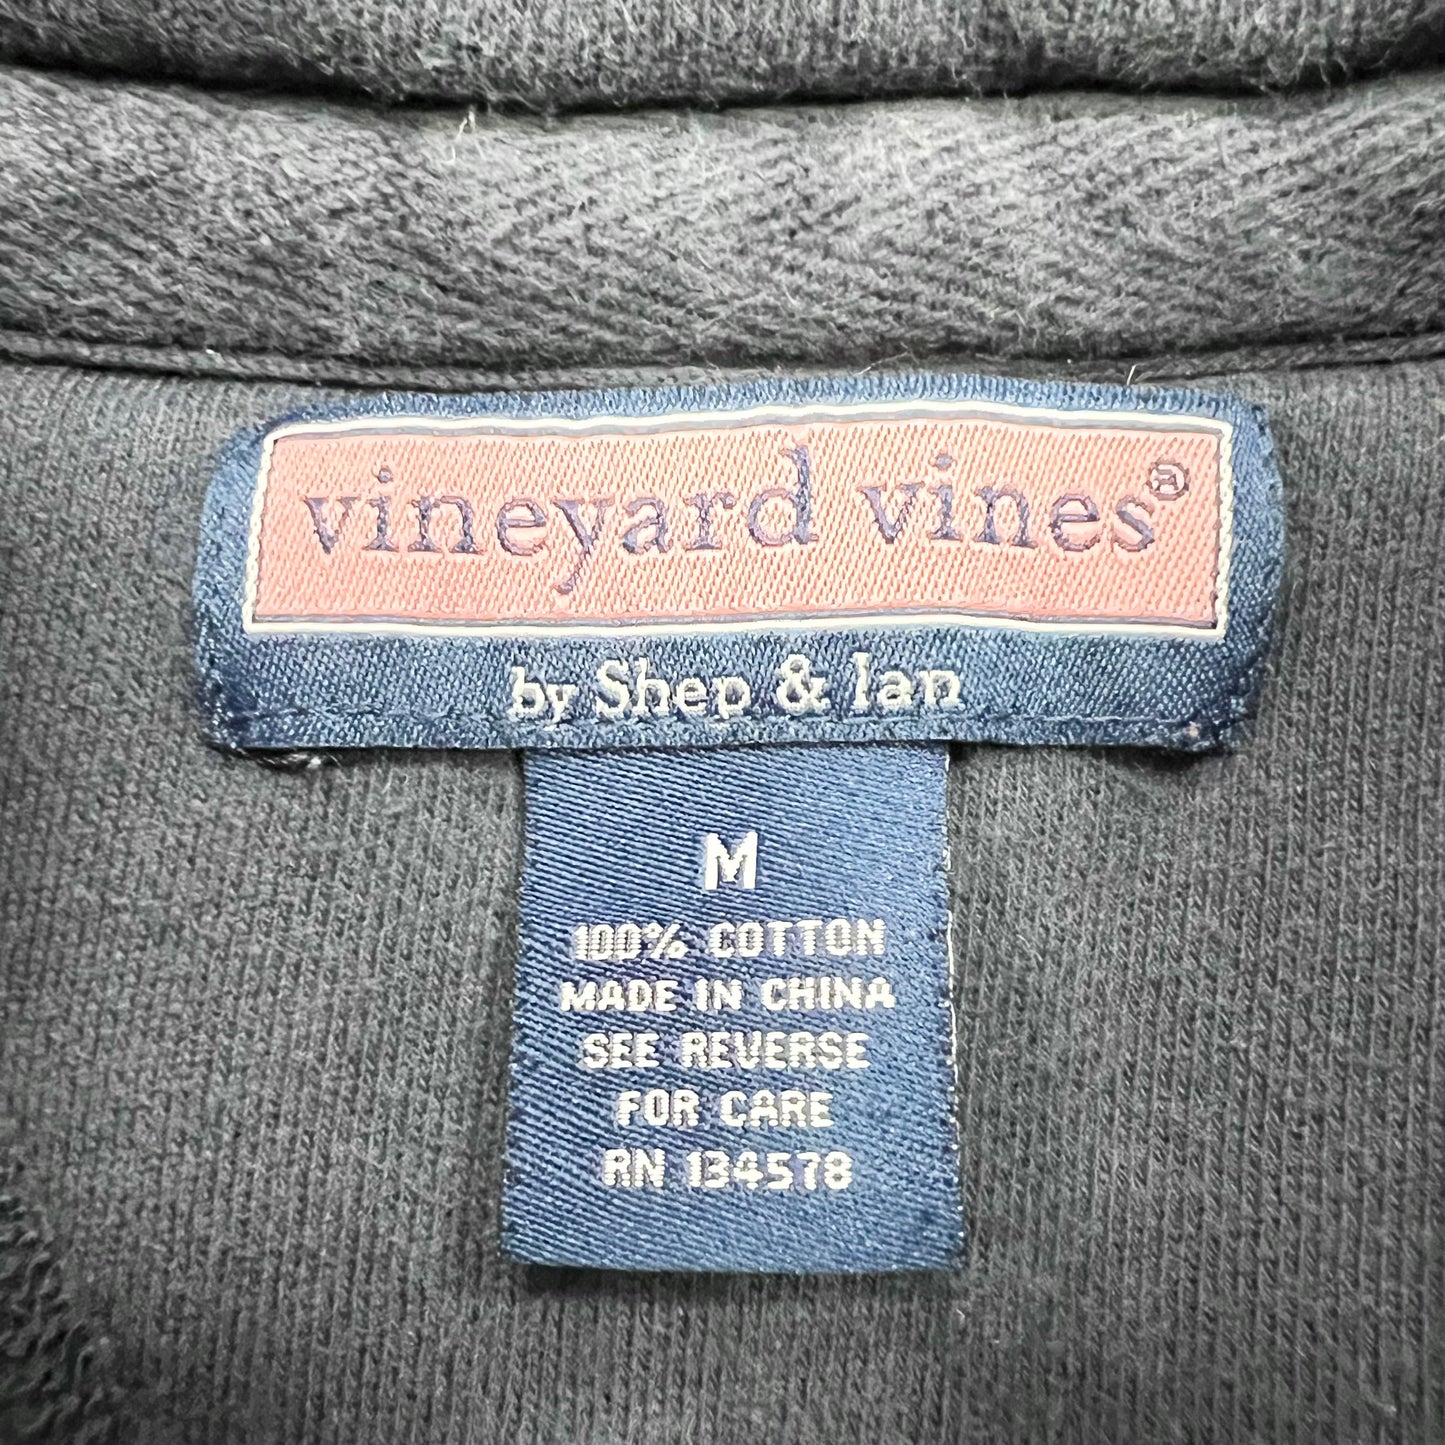 Sweatshirt Designer By Vineyard Vines  Size: M